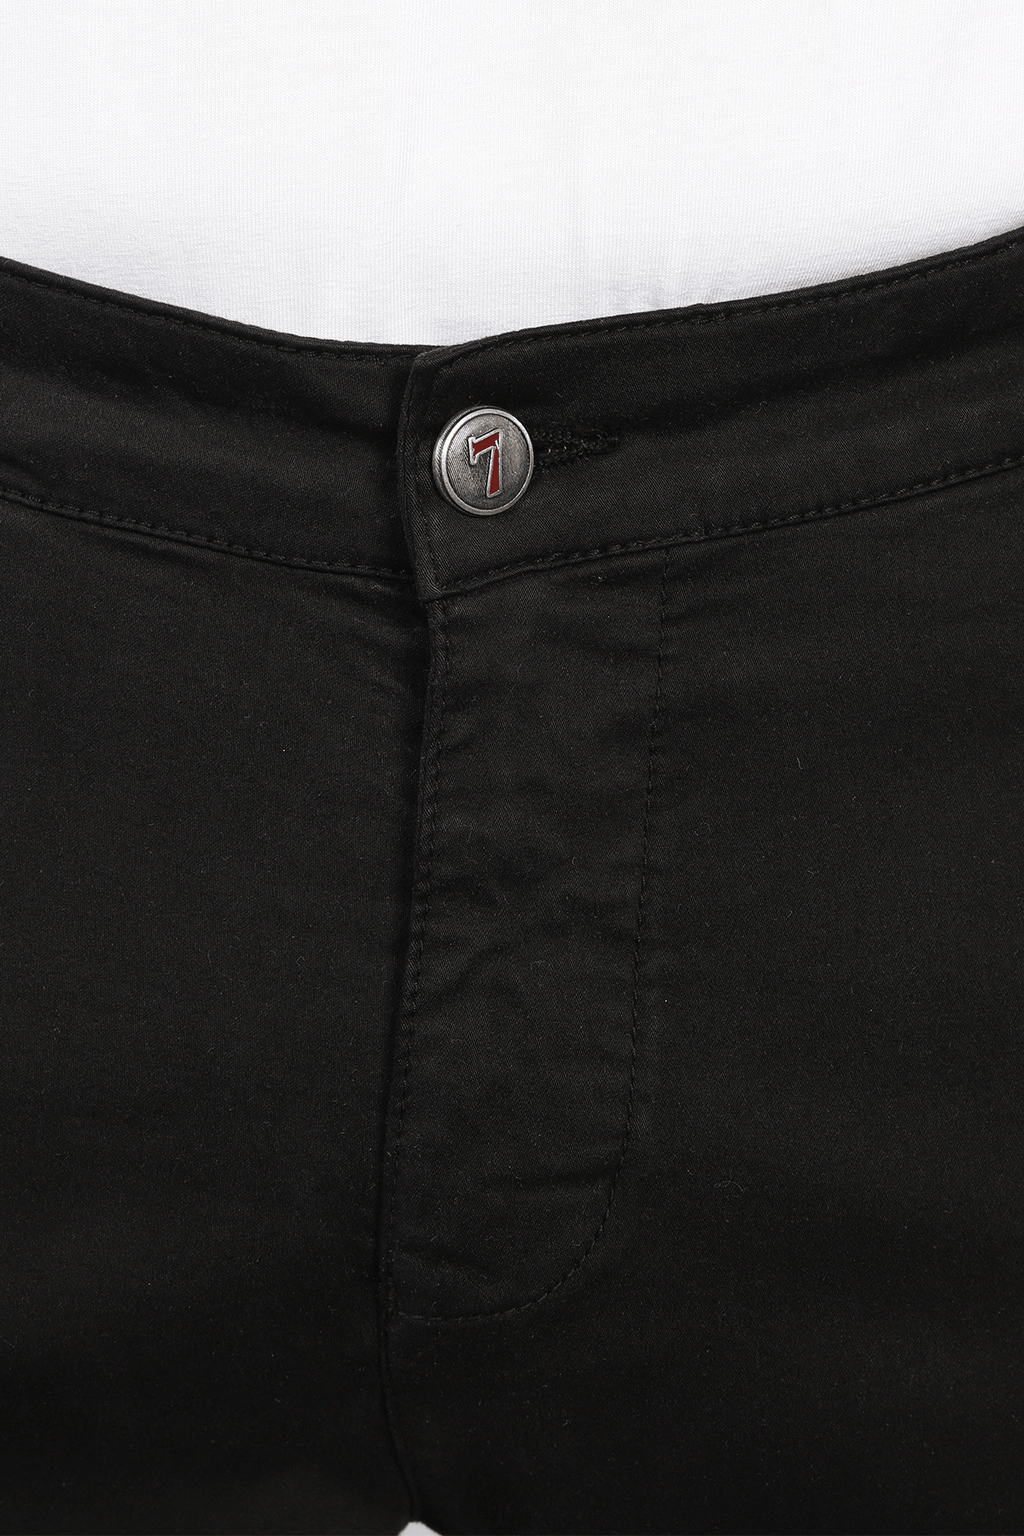 Black Shorts - 7 Downie St.®